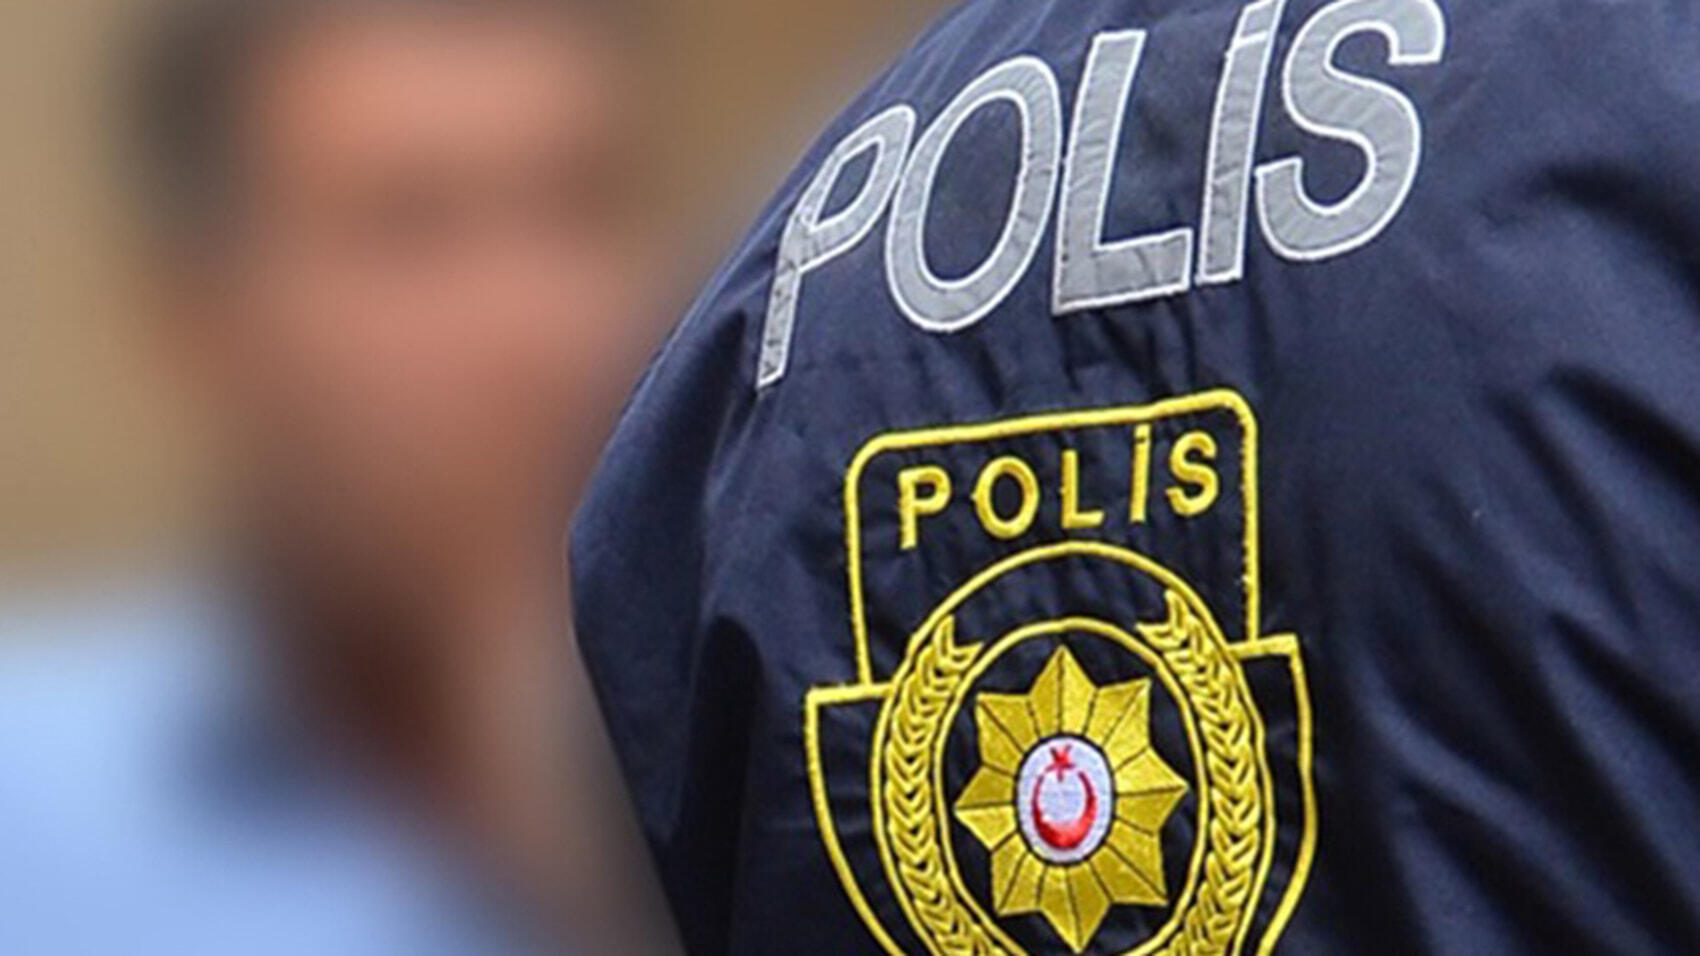 Girne’de yaşanan kavgada iki kişi tutuklandı, bir kişi aleyhine yasal işlem başlatıldı